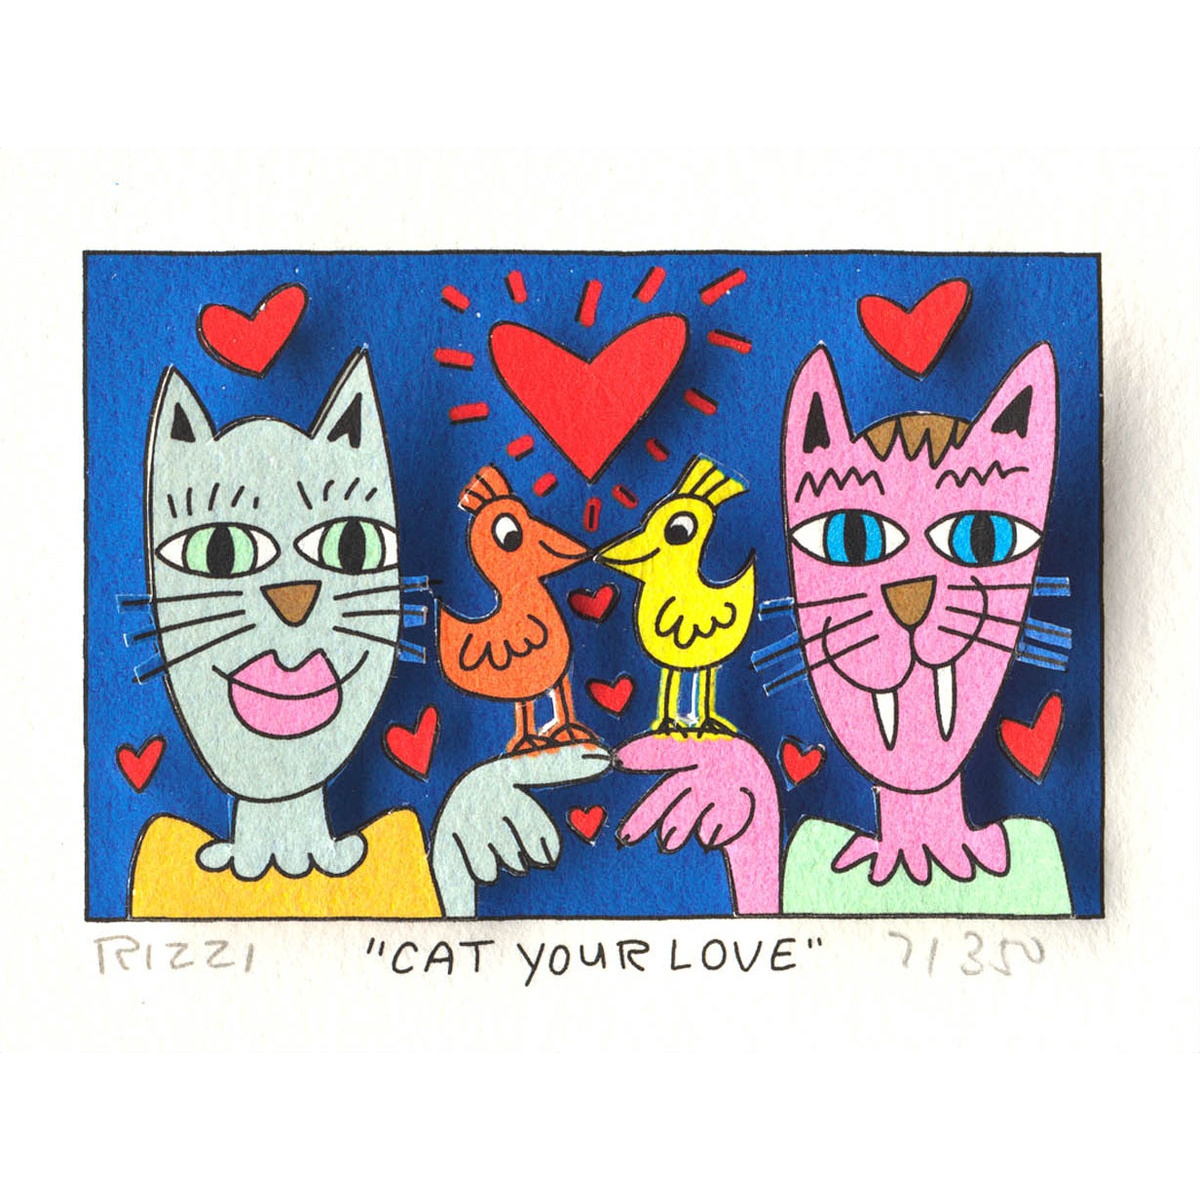 Cat your love von James Rizzi